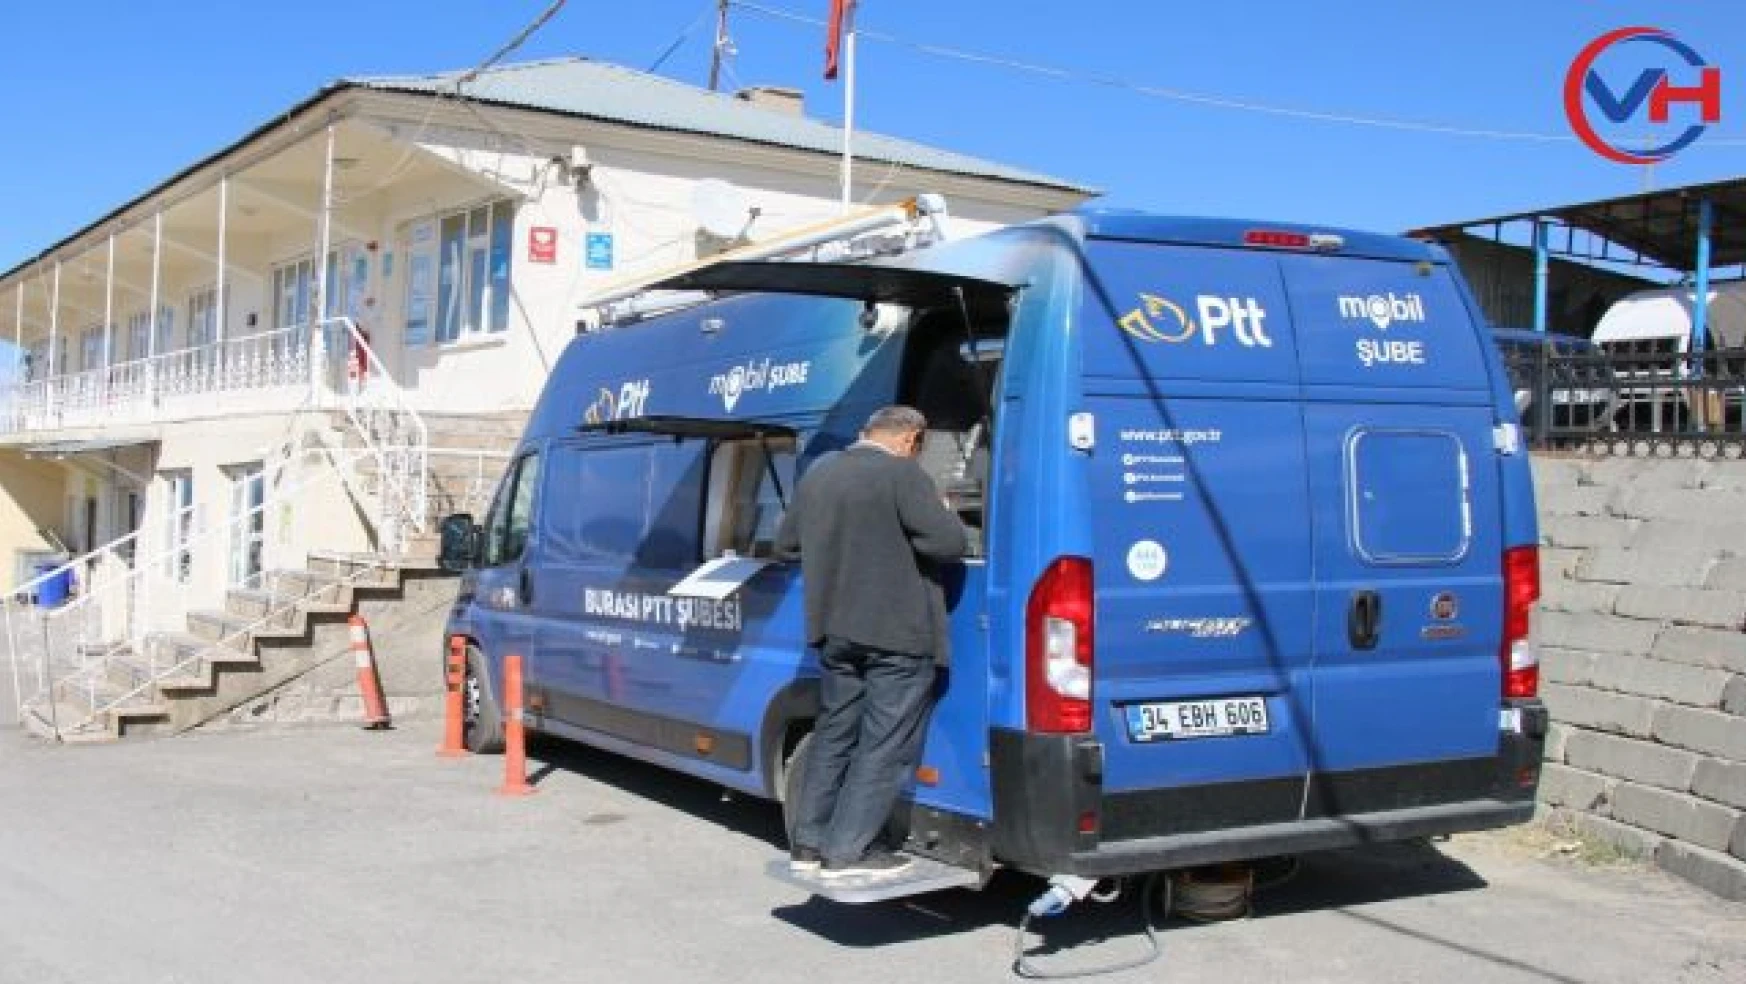 Edremit'te PTT Mobil Aracı Hizmet Vermeye Başladı